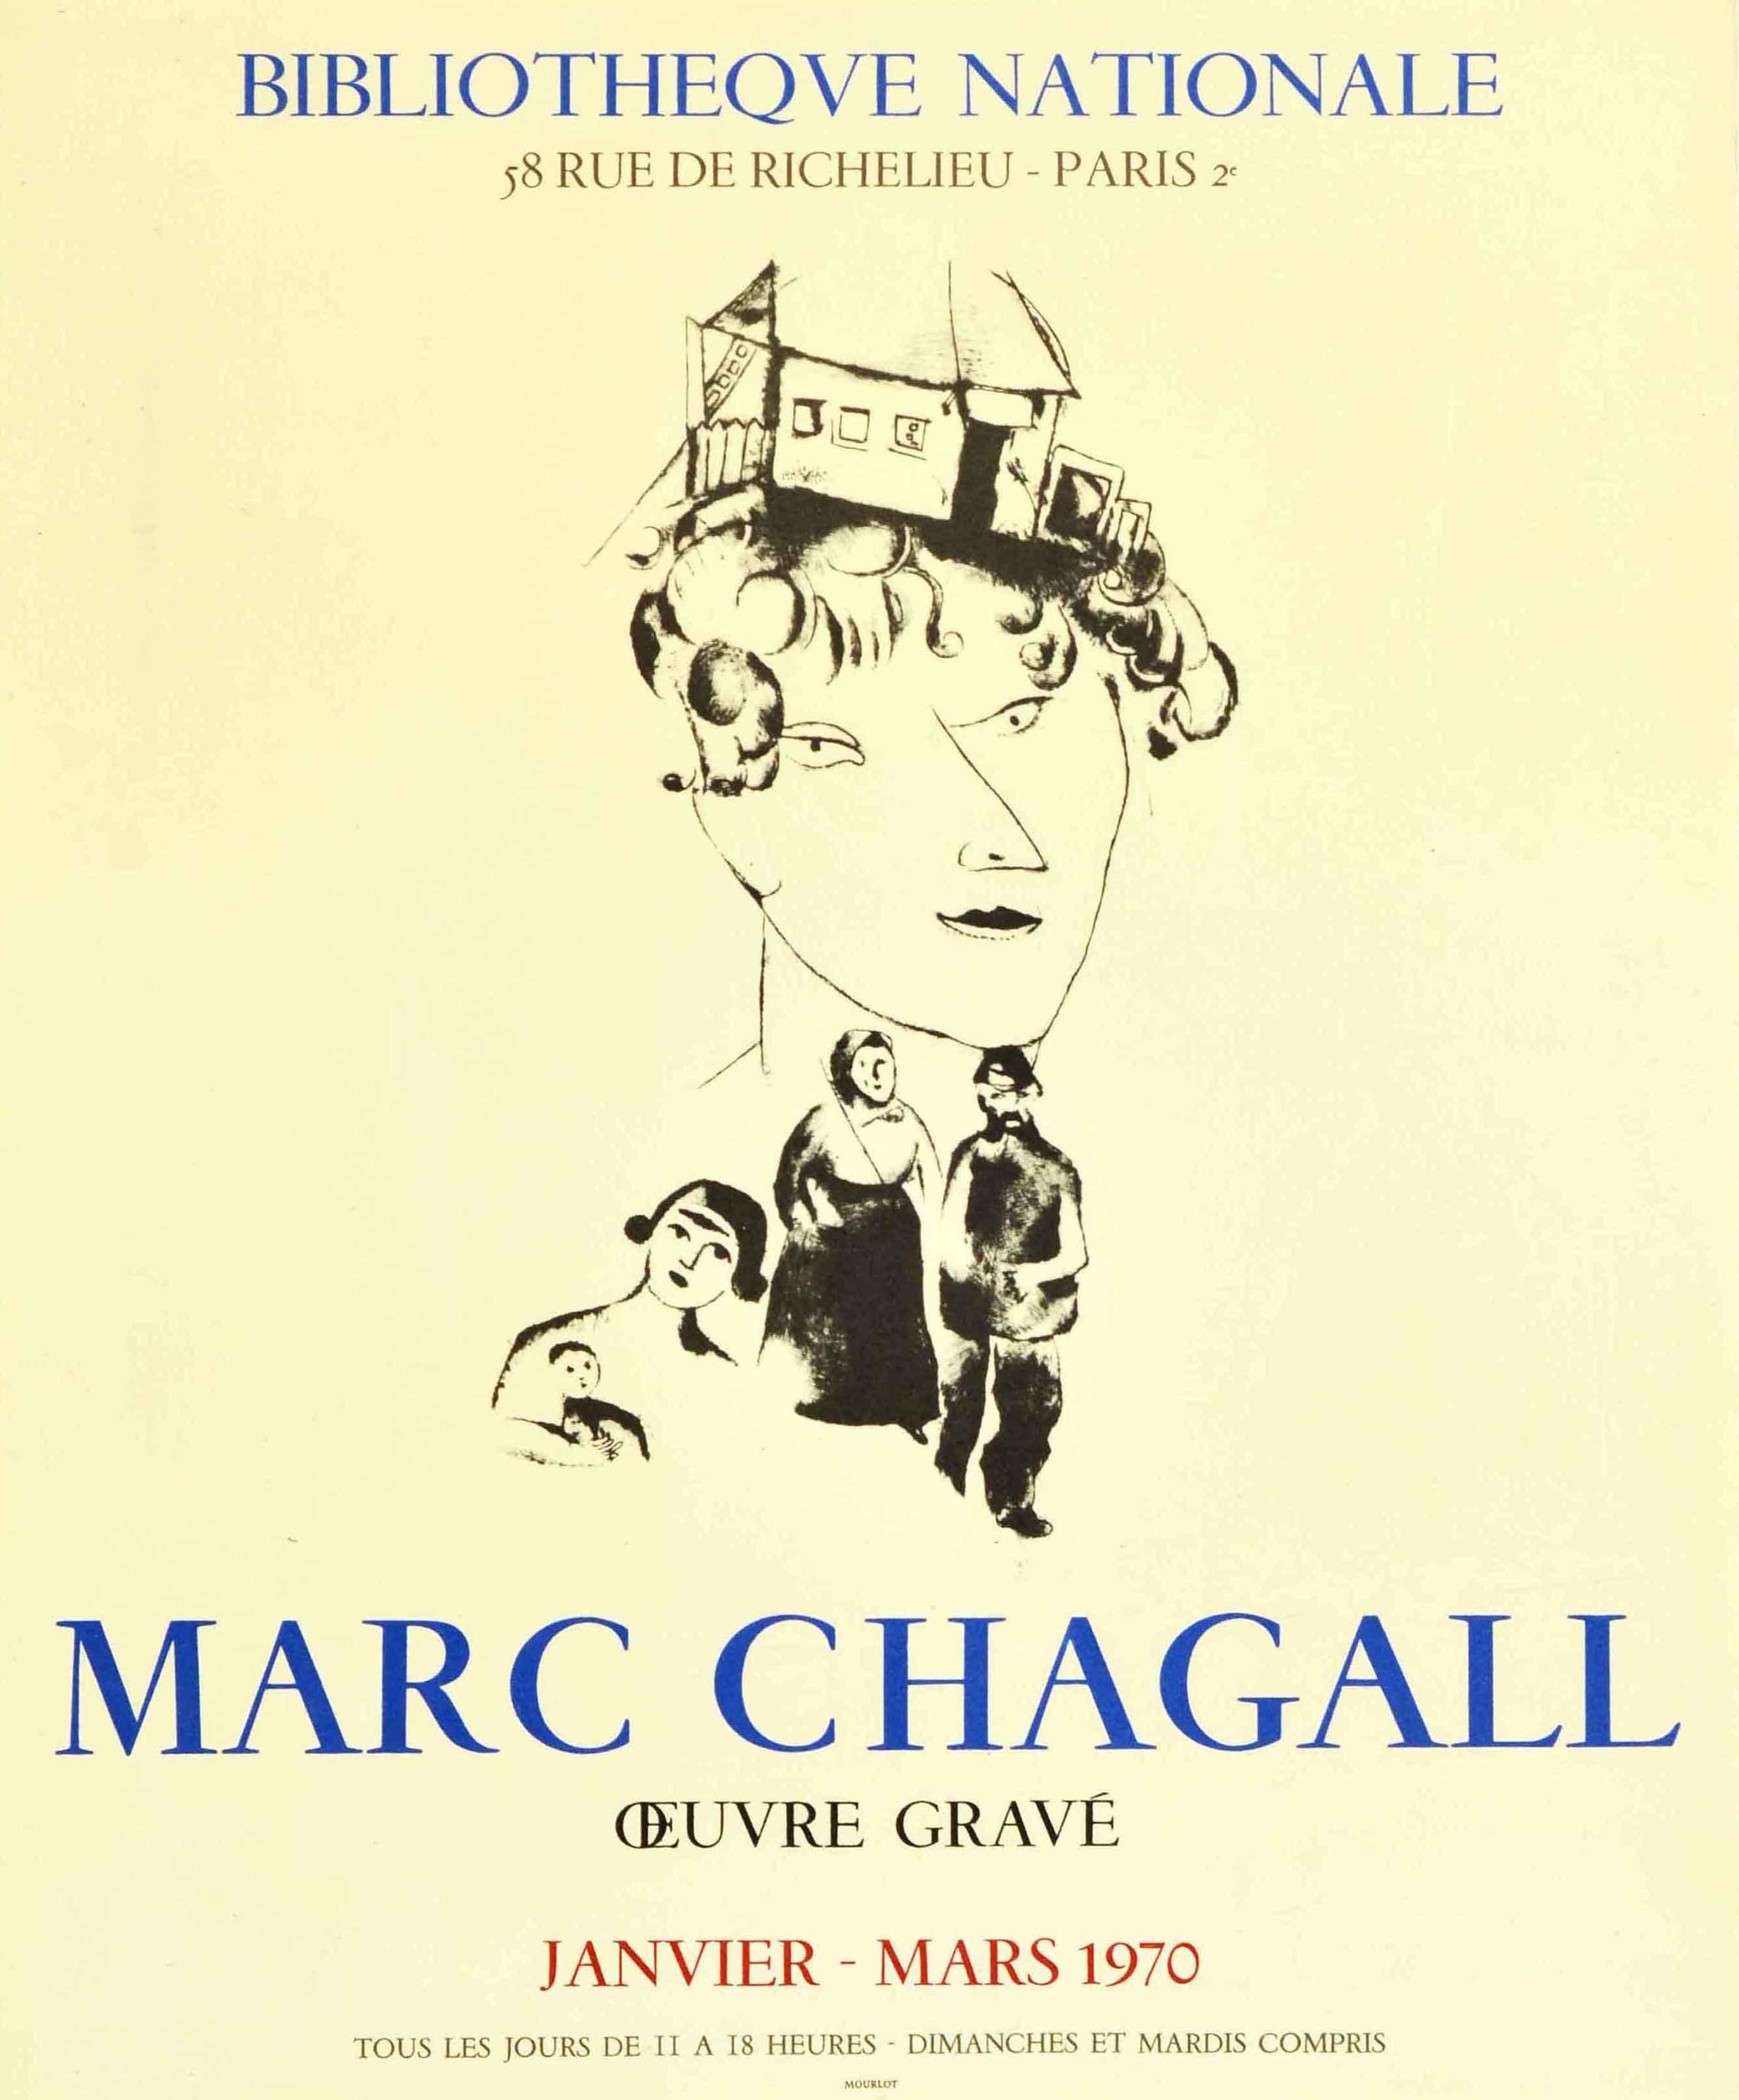 Affiche publicitaire originale d'époque pour une exposition d'œuvres gravées du célèbre artiste Marc Chagall (1887-1985) L'œuvre Grave qui s'est tenue à la Bibliothèque nationale / National Library Paris de janvier à mars 1970. L'affiche présentait